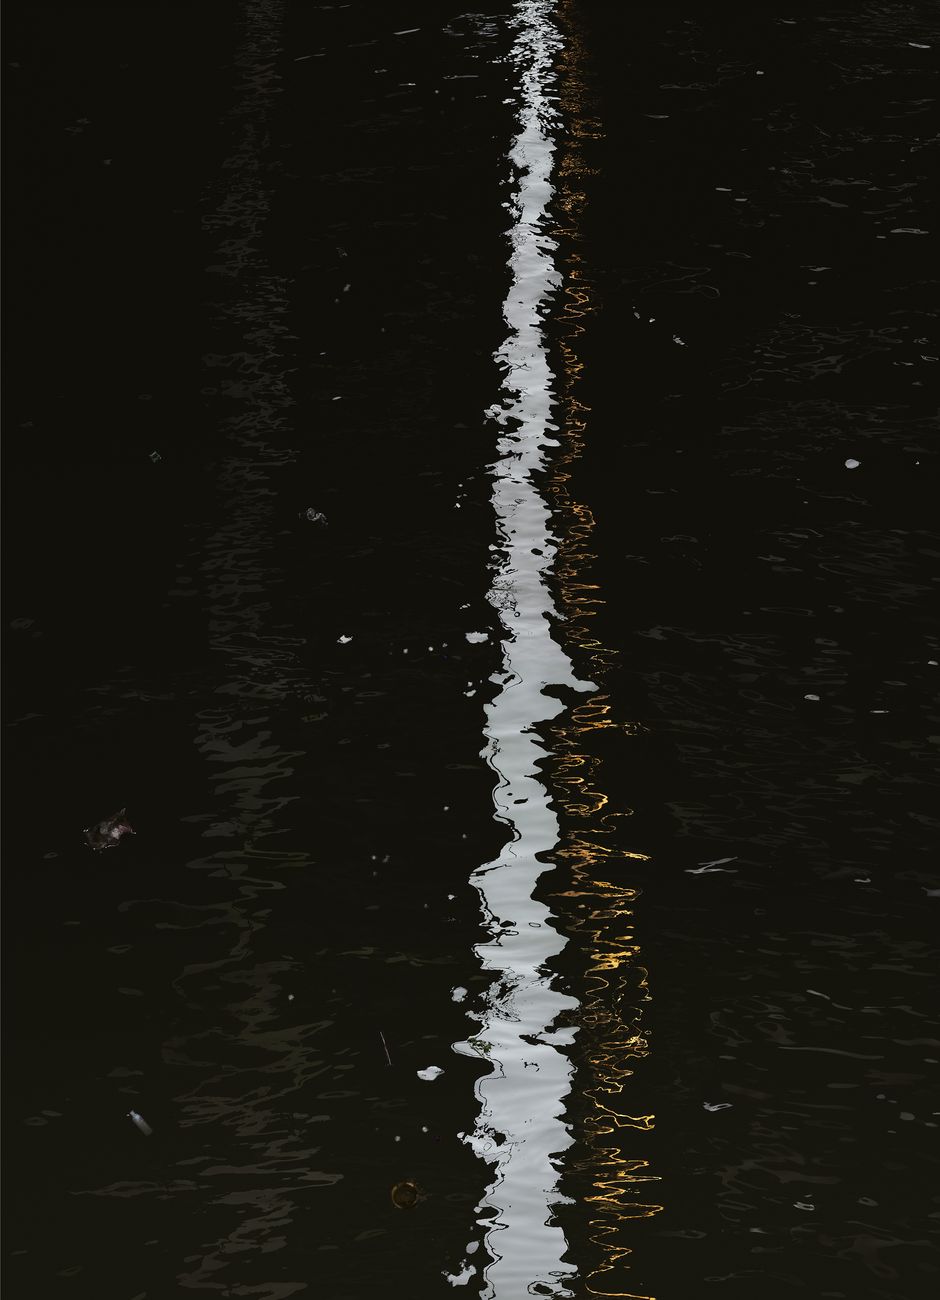 Andreas Gursky, Bangkok V, 2011, Stampa a getto d’inchiostro 307 x 227 x 6.2 cm (con cornice)